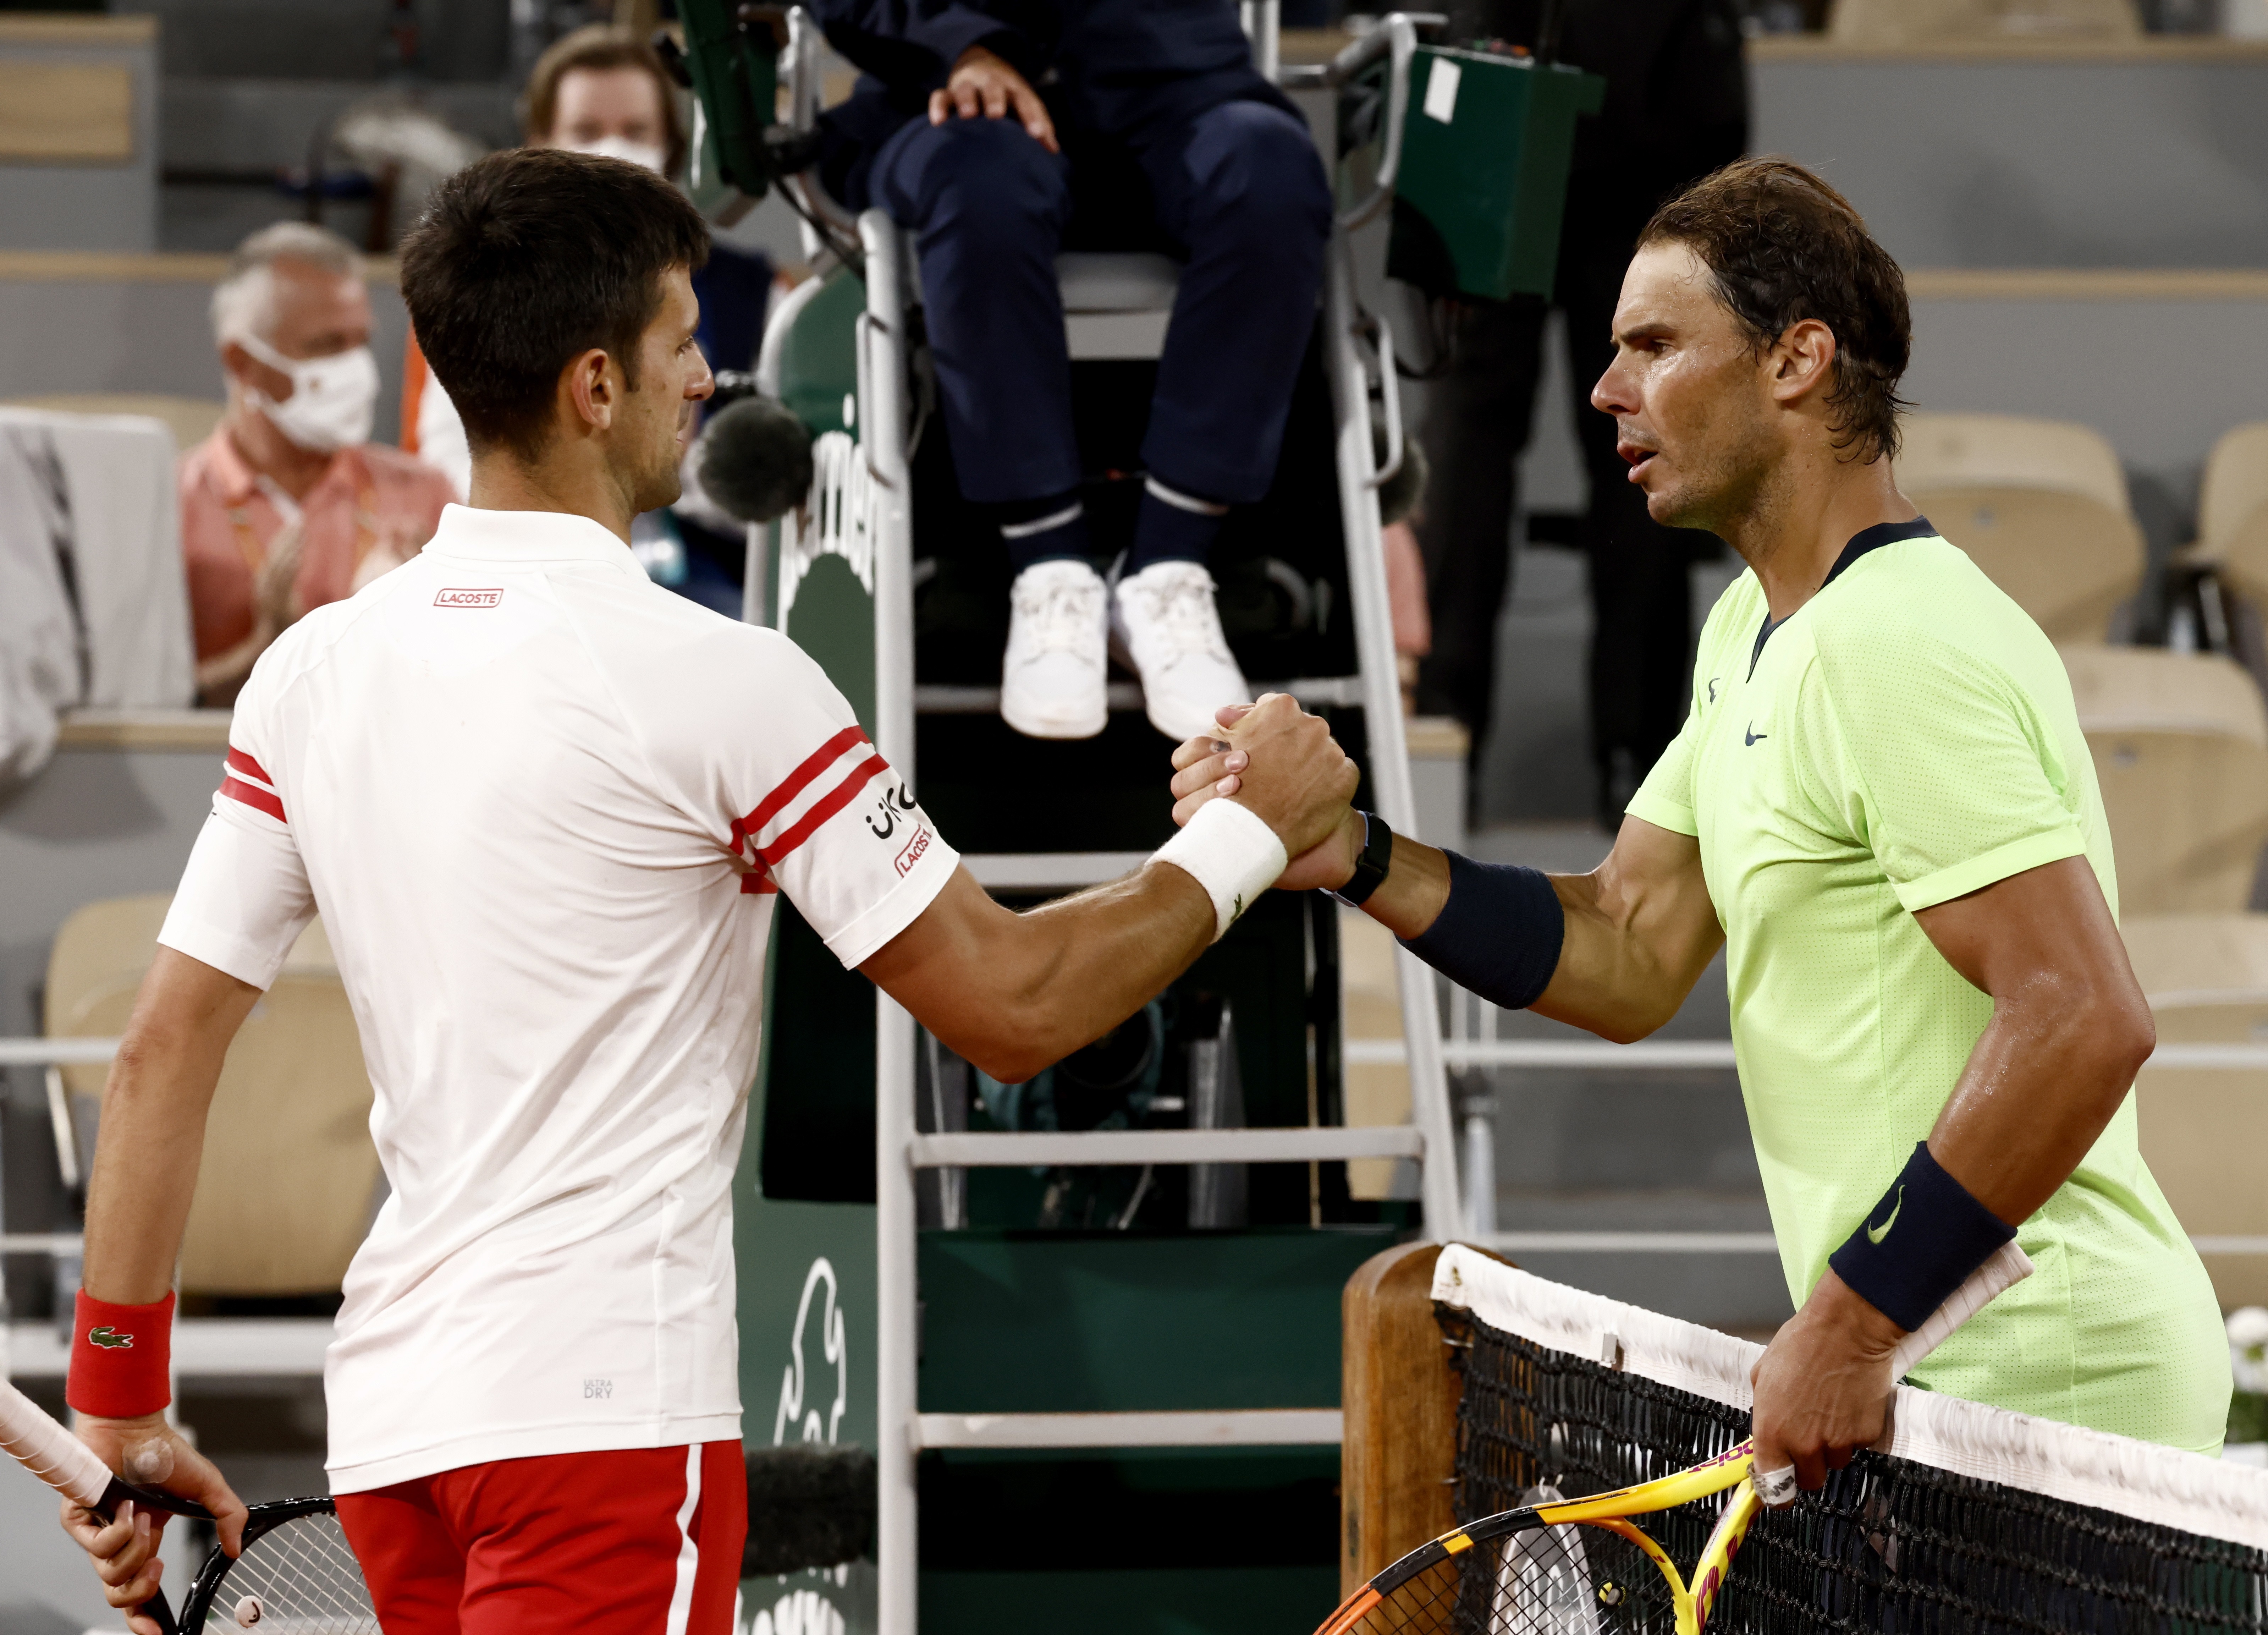 Regreso de Nadal a las canchas son “buenas noticias para el mundo del tenis”, según Djokovic